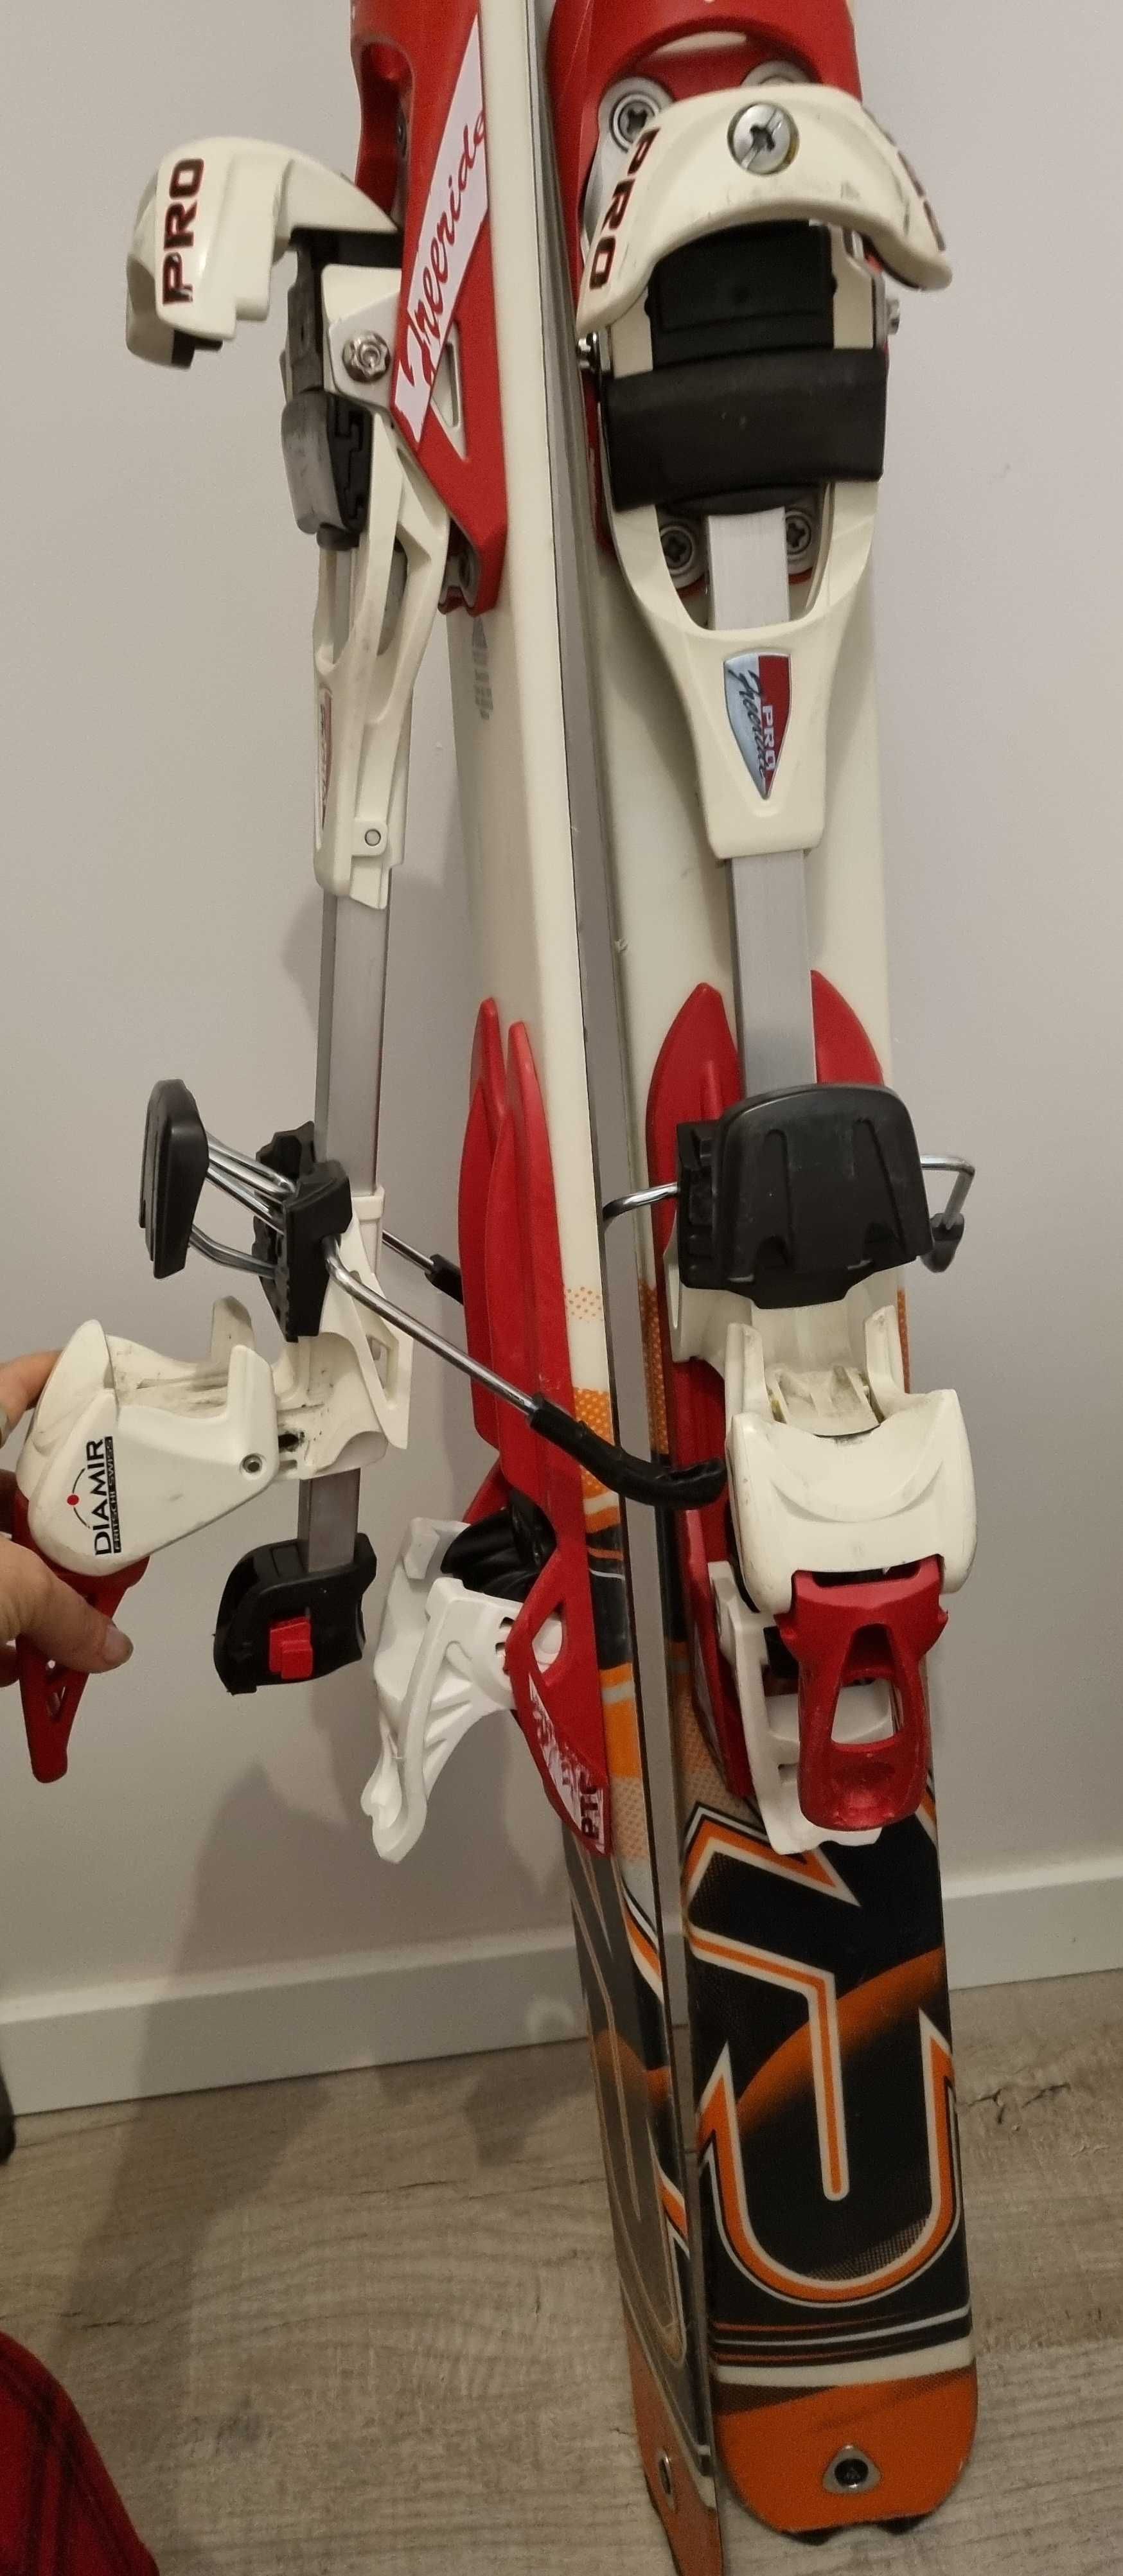 Zestaw: narty skirurowe K2 156cm z wiazaniami + foki